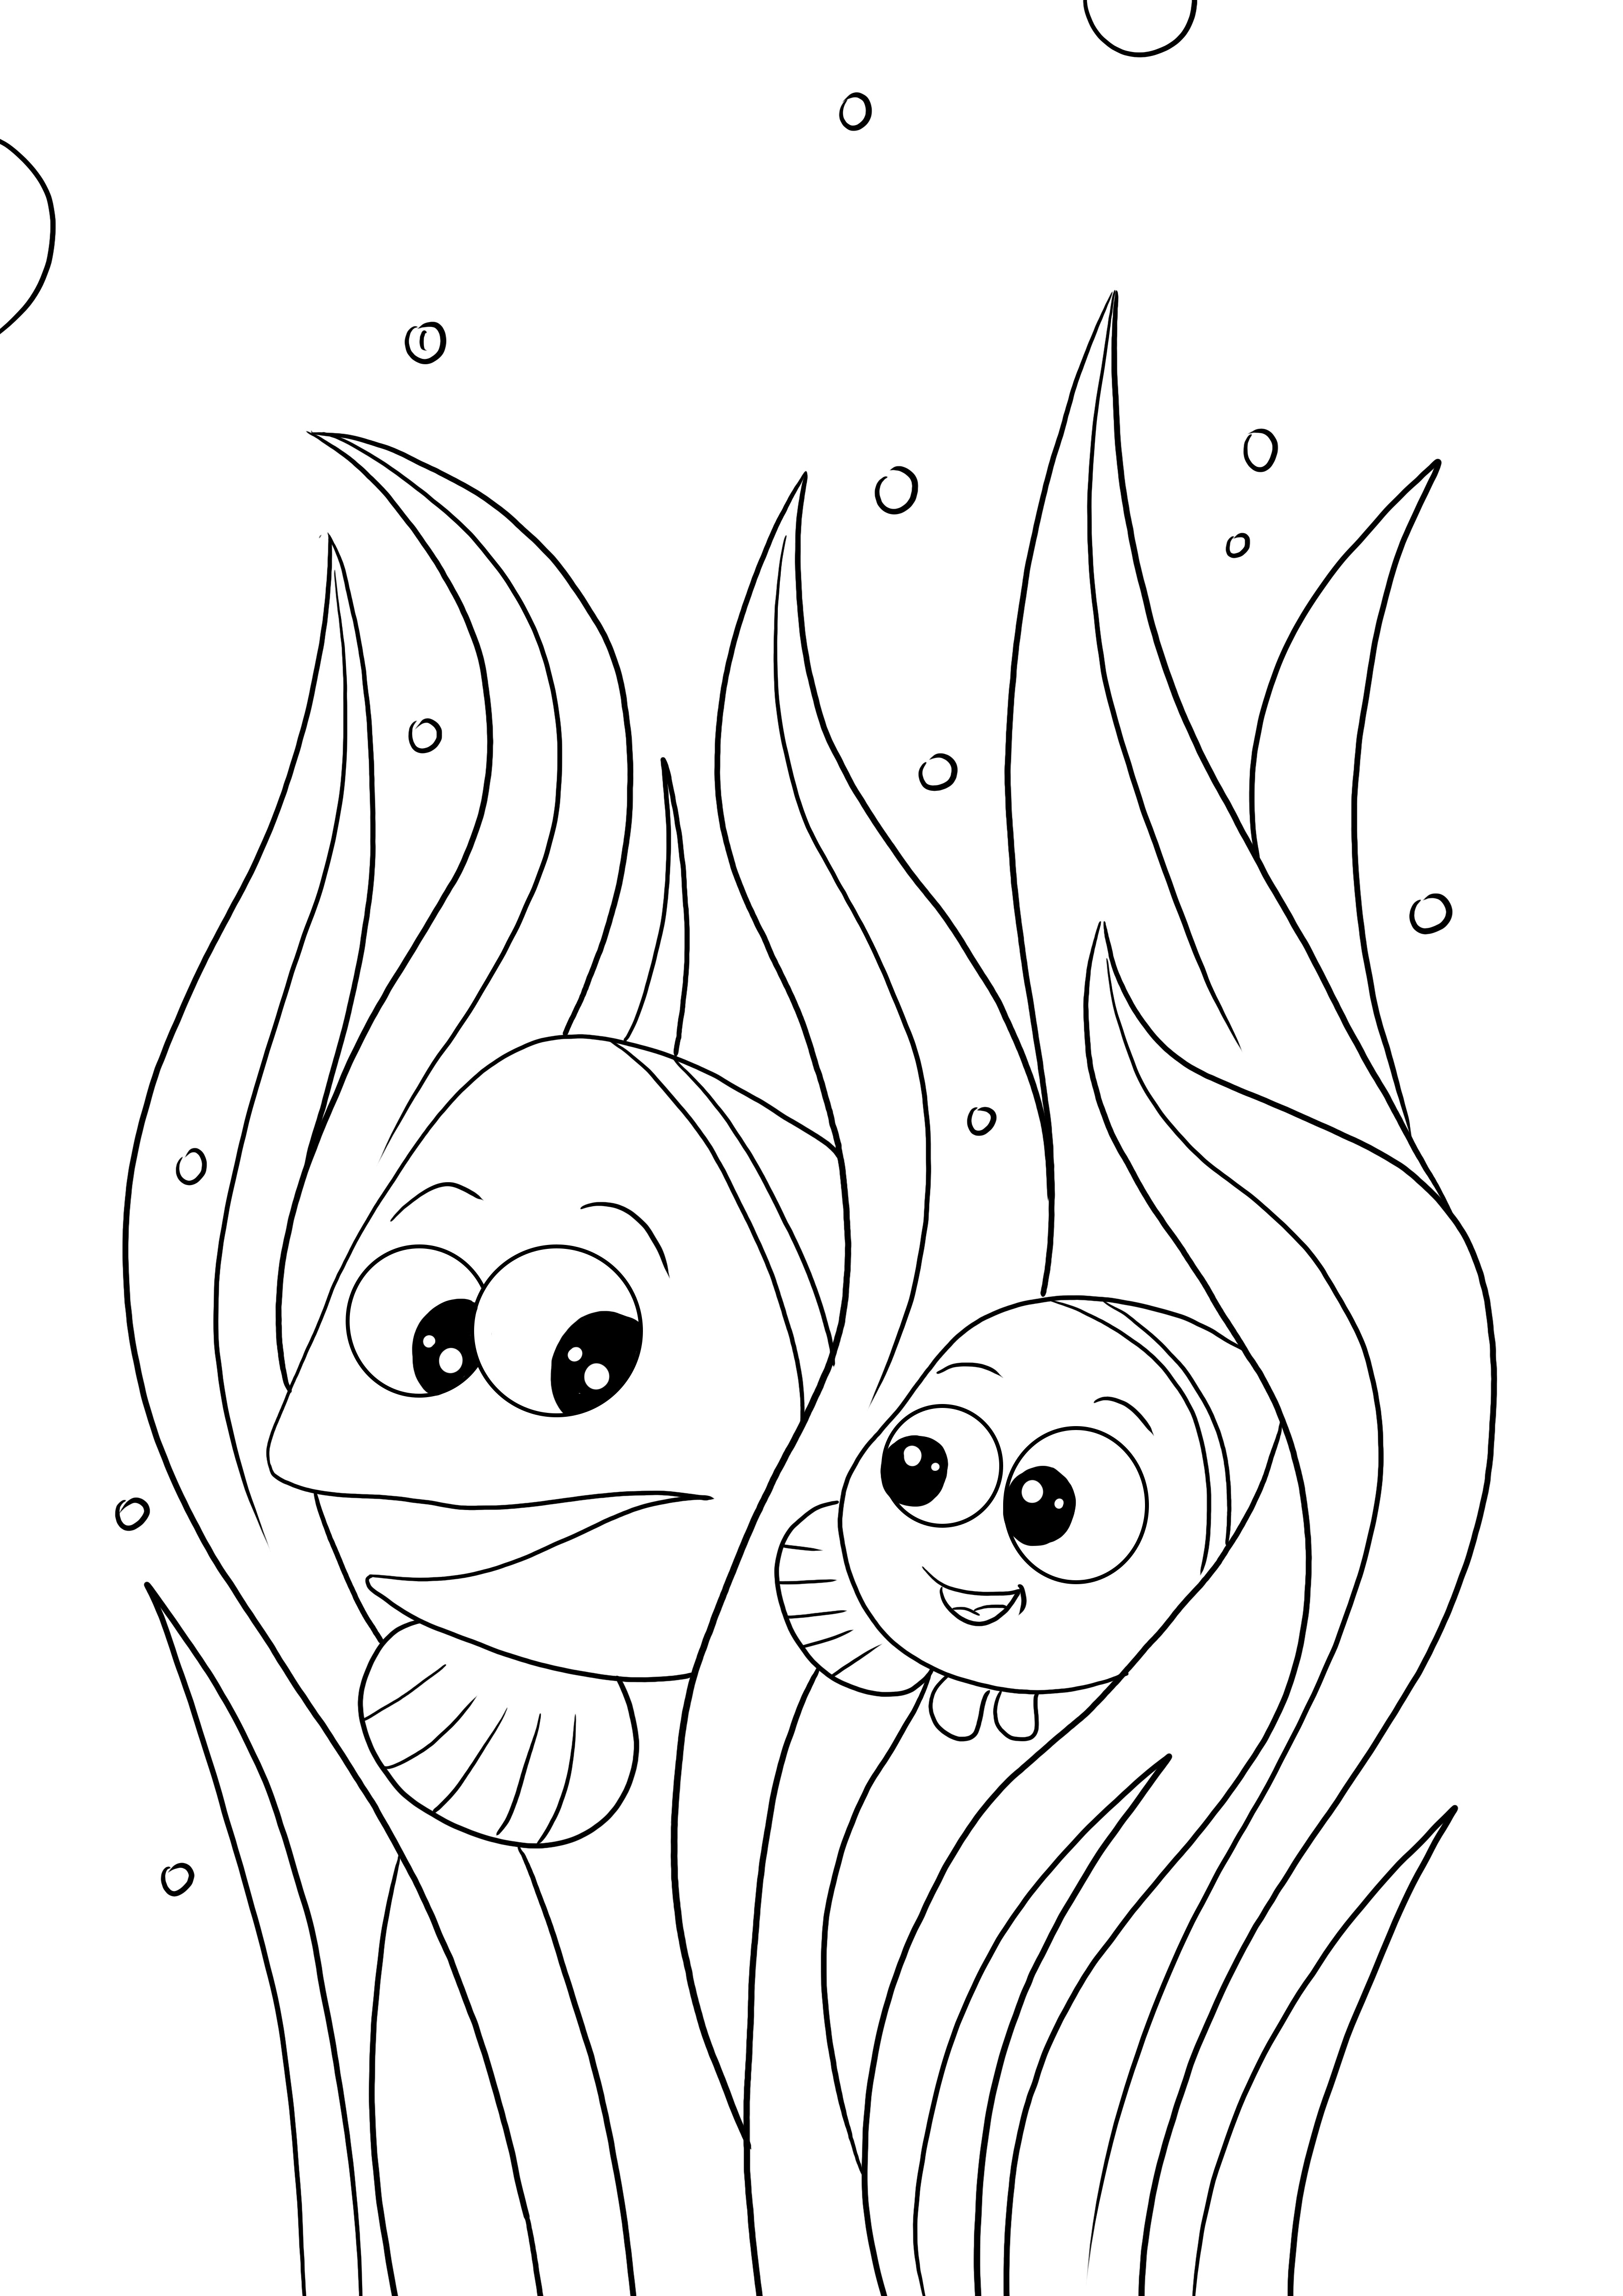 Marlin i Nemo bezpłatna strona do kolorowania i drukowania dla dzieci w każdym wieku